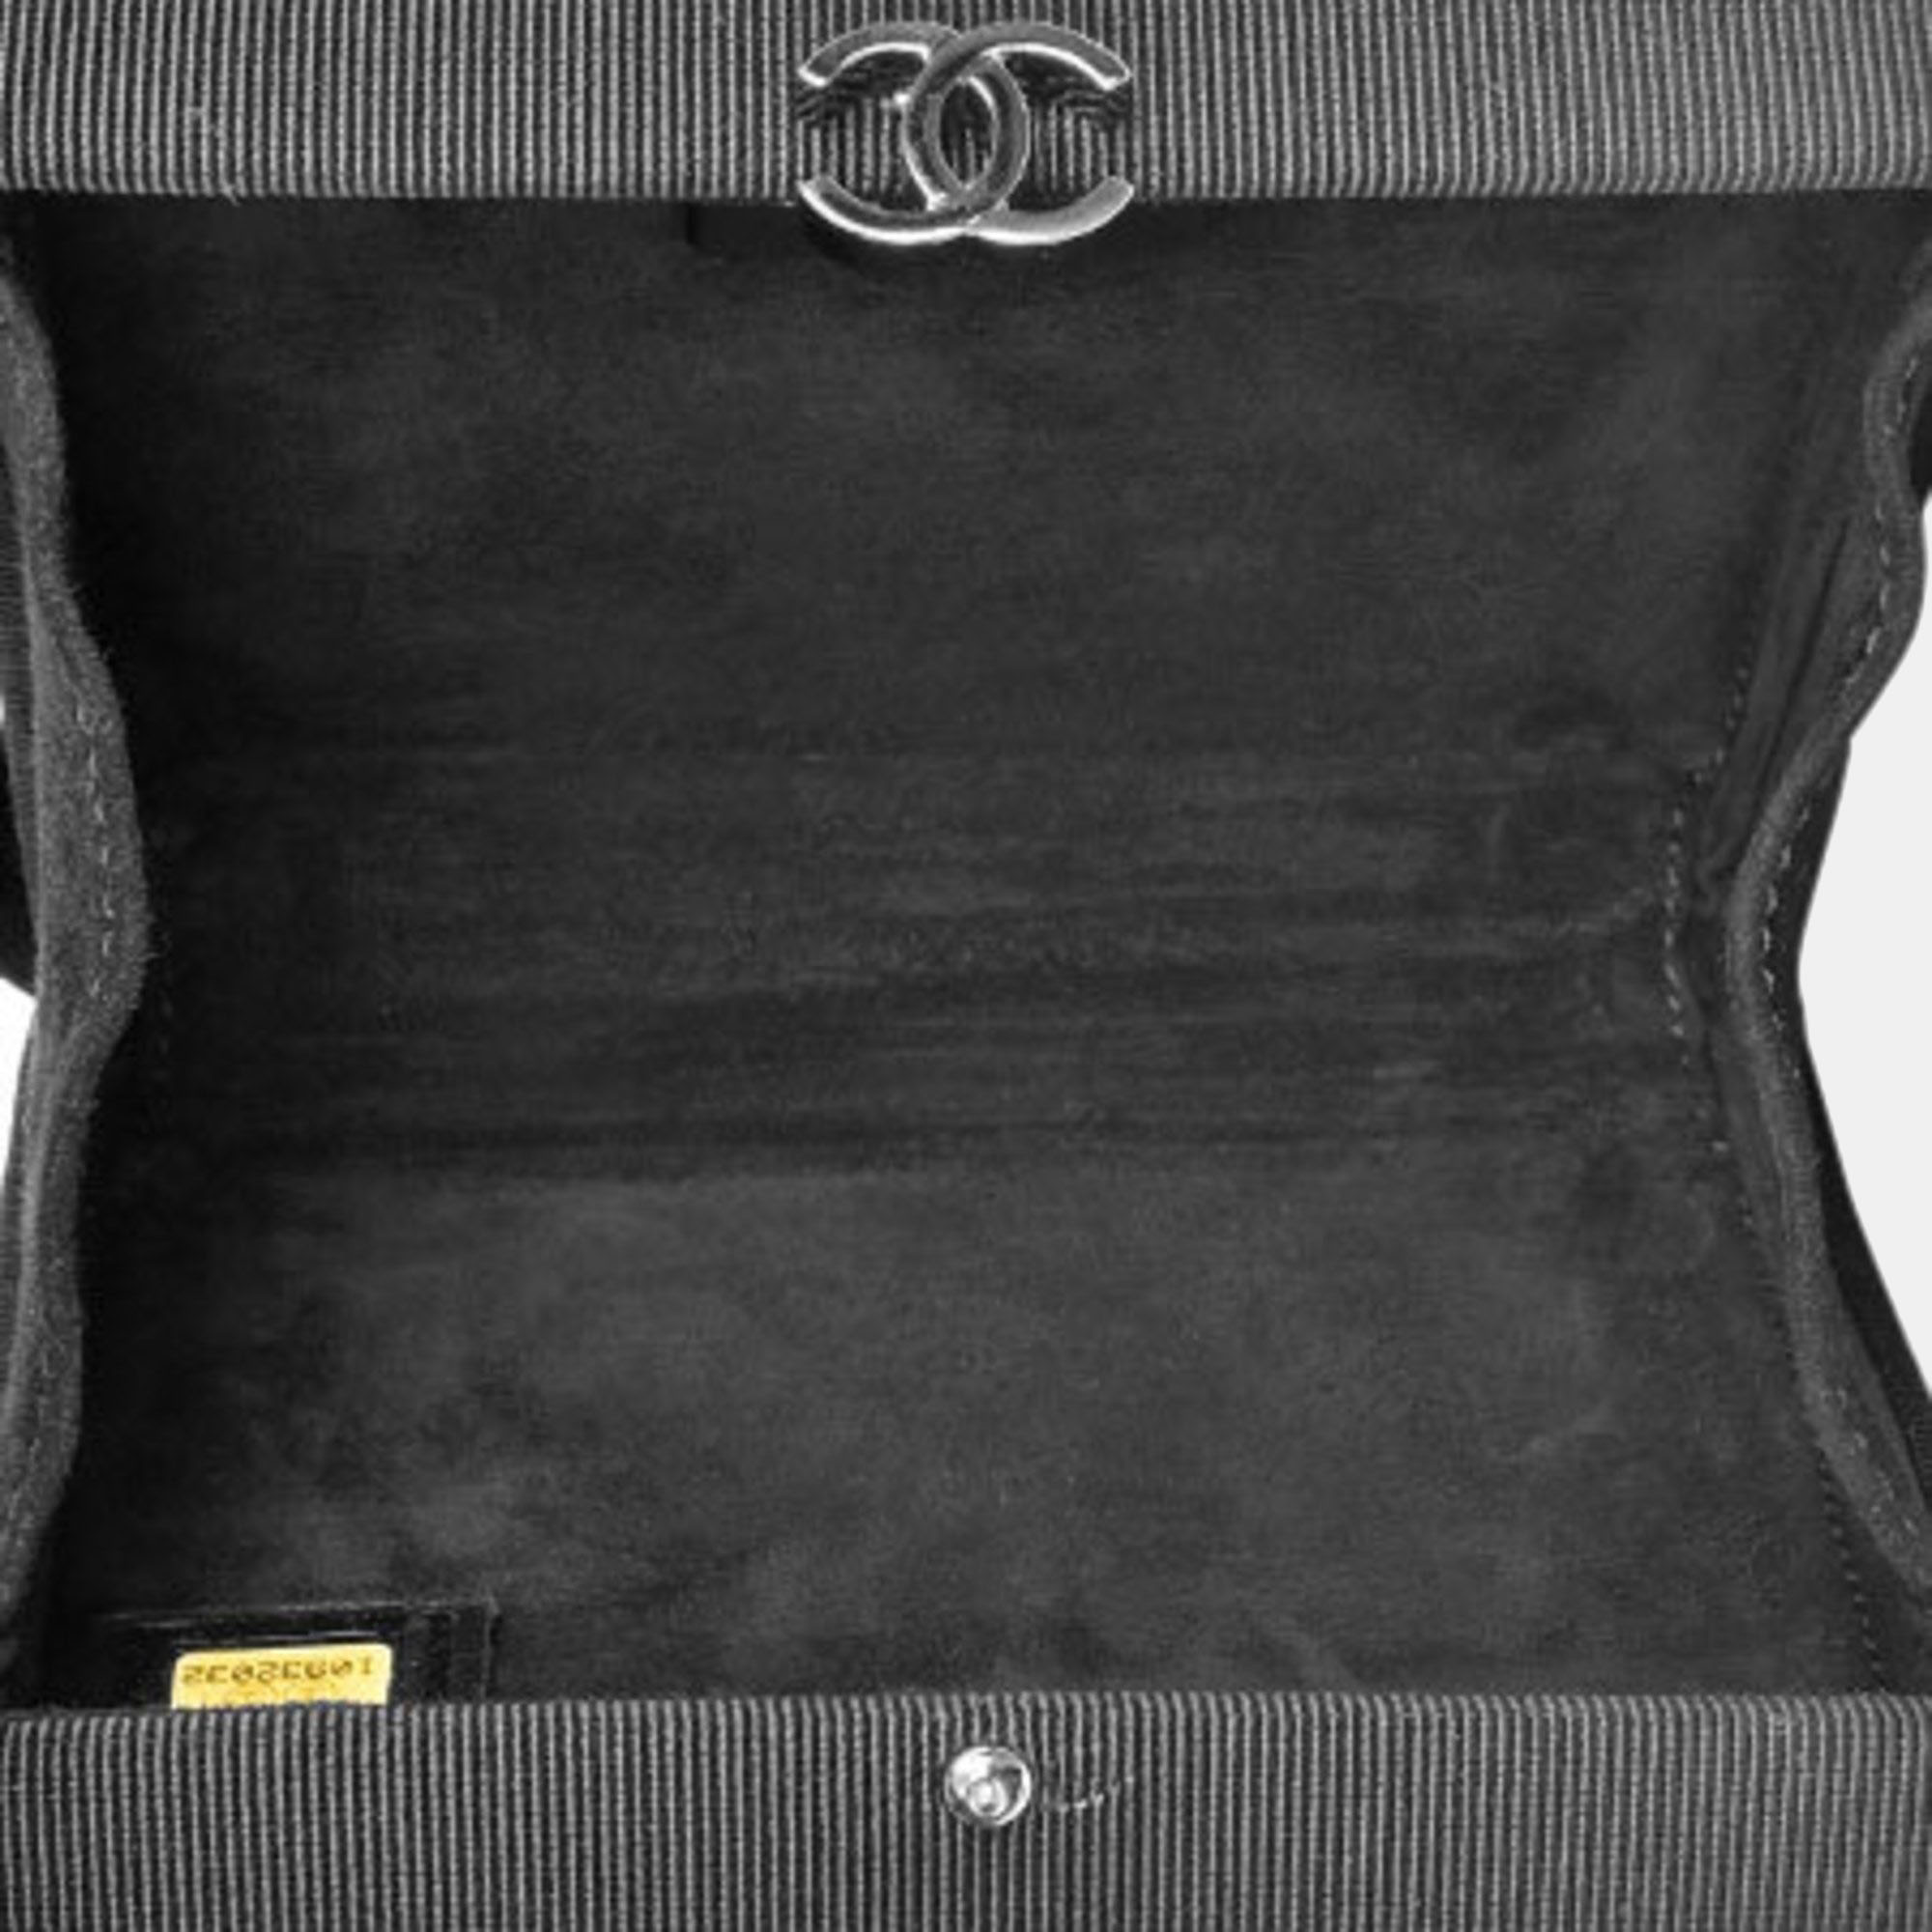 Chanel Black/Beige Fabric Rhinestone Plastic Coco Clutch Bag